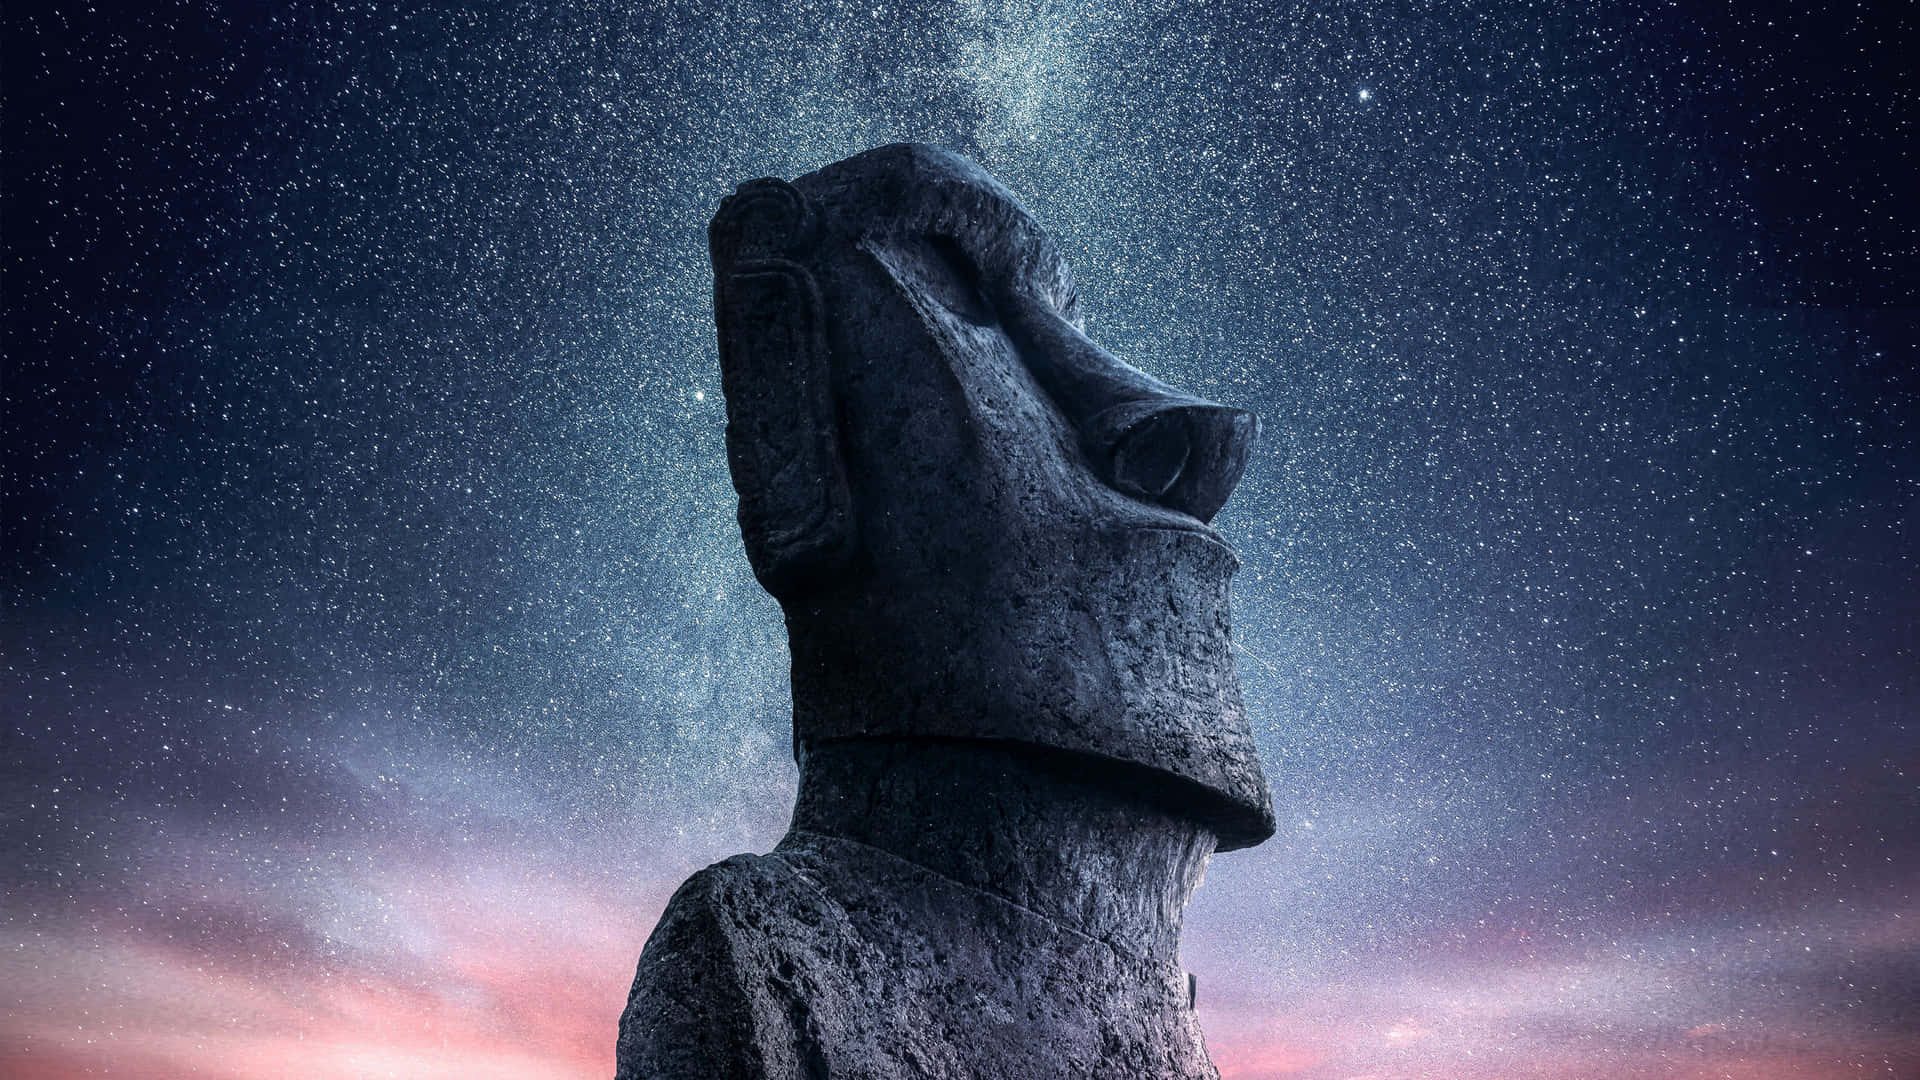 Moai 3840 X 2160 Wallpaper